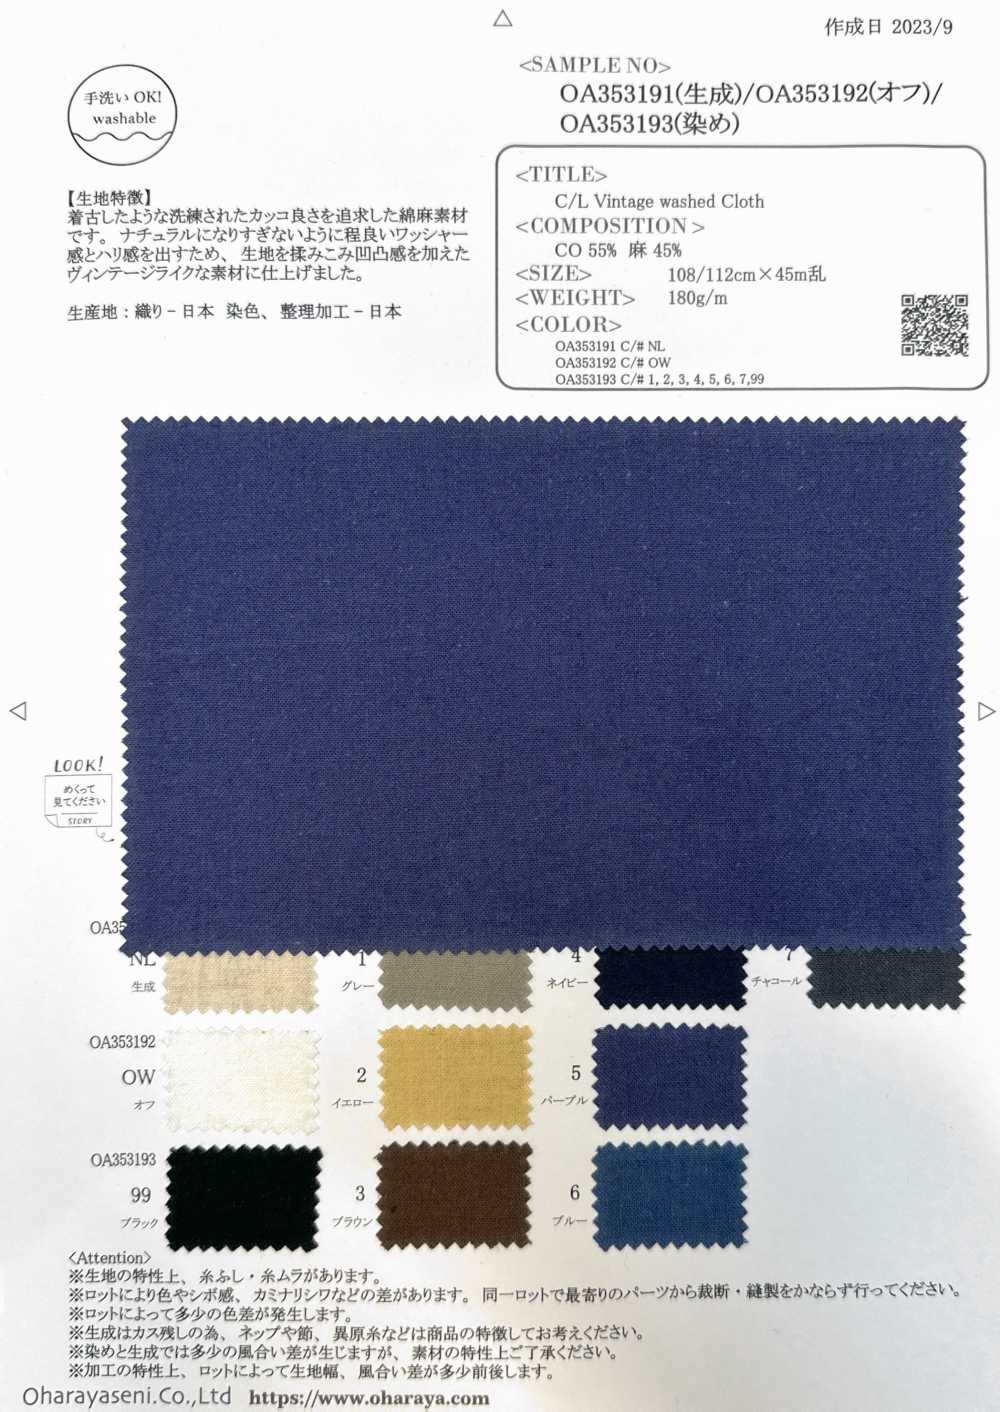 OA353191 Tissu Lavé Vintage C/L[Fabrication De Textile] Oharayaseni